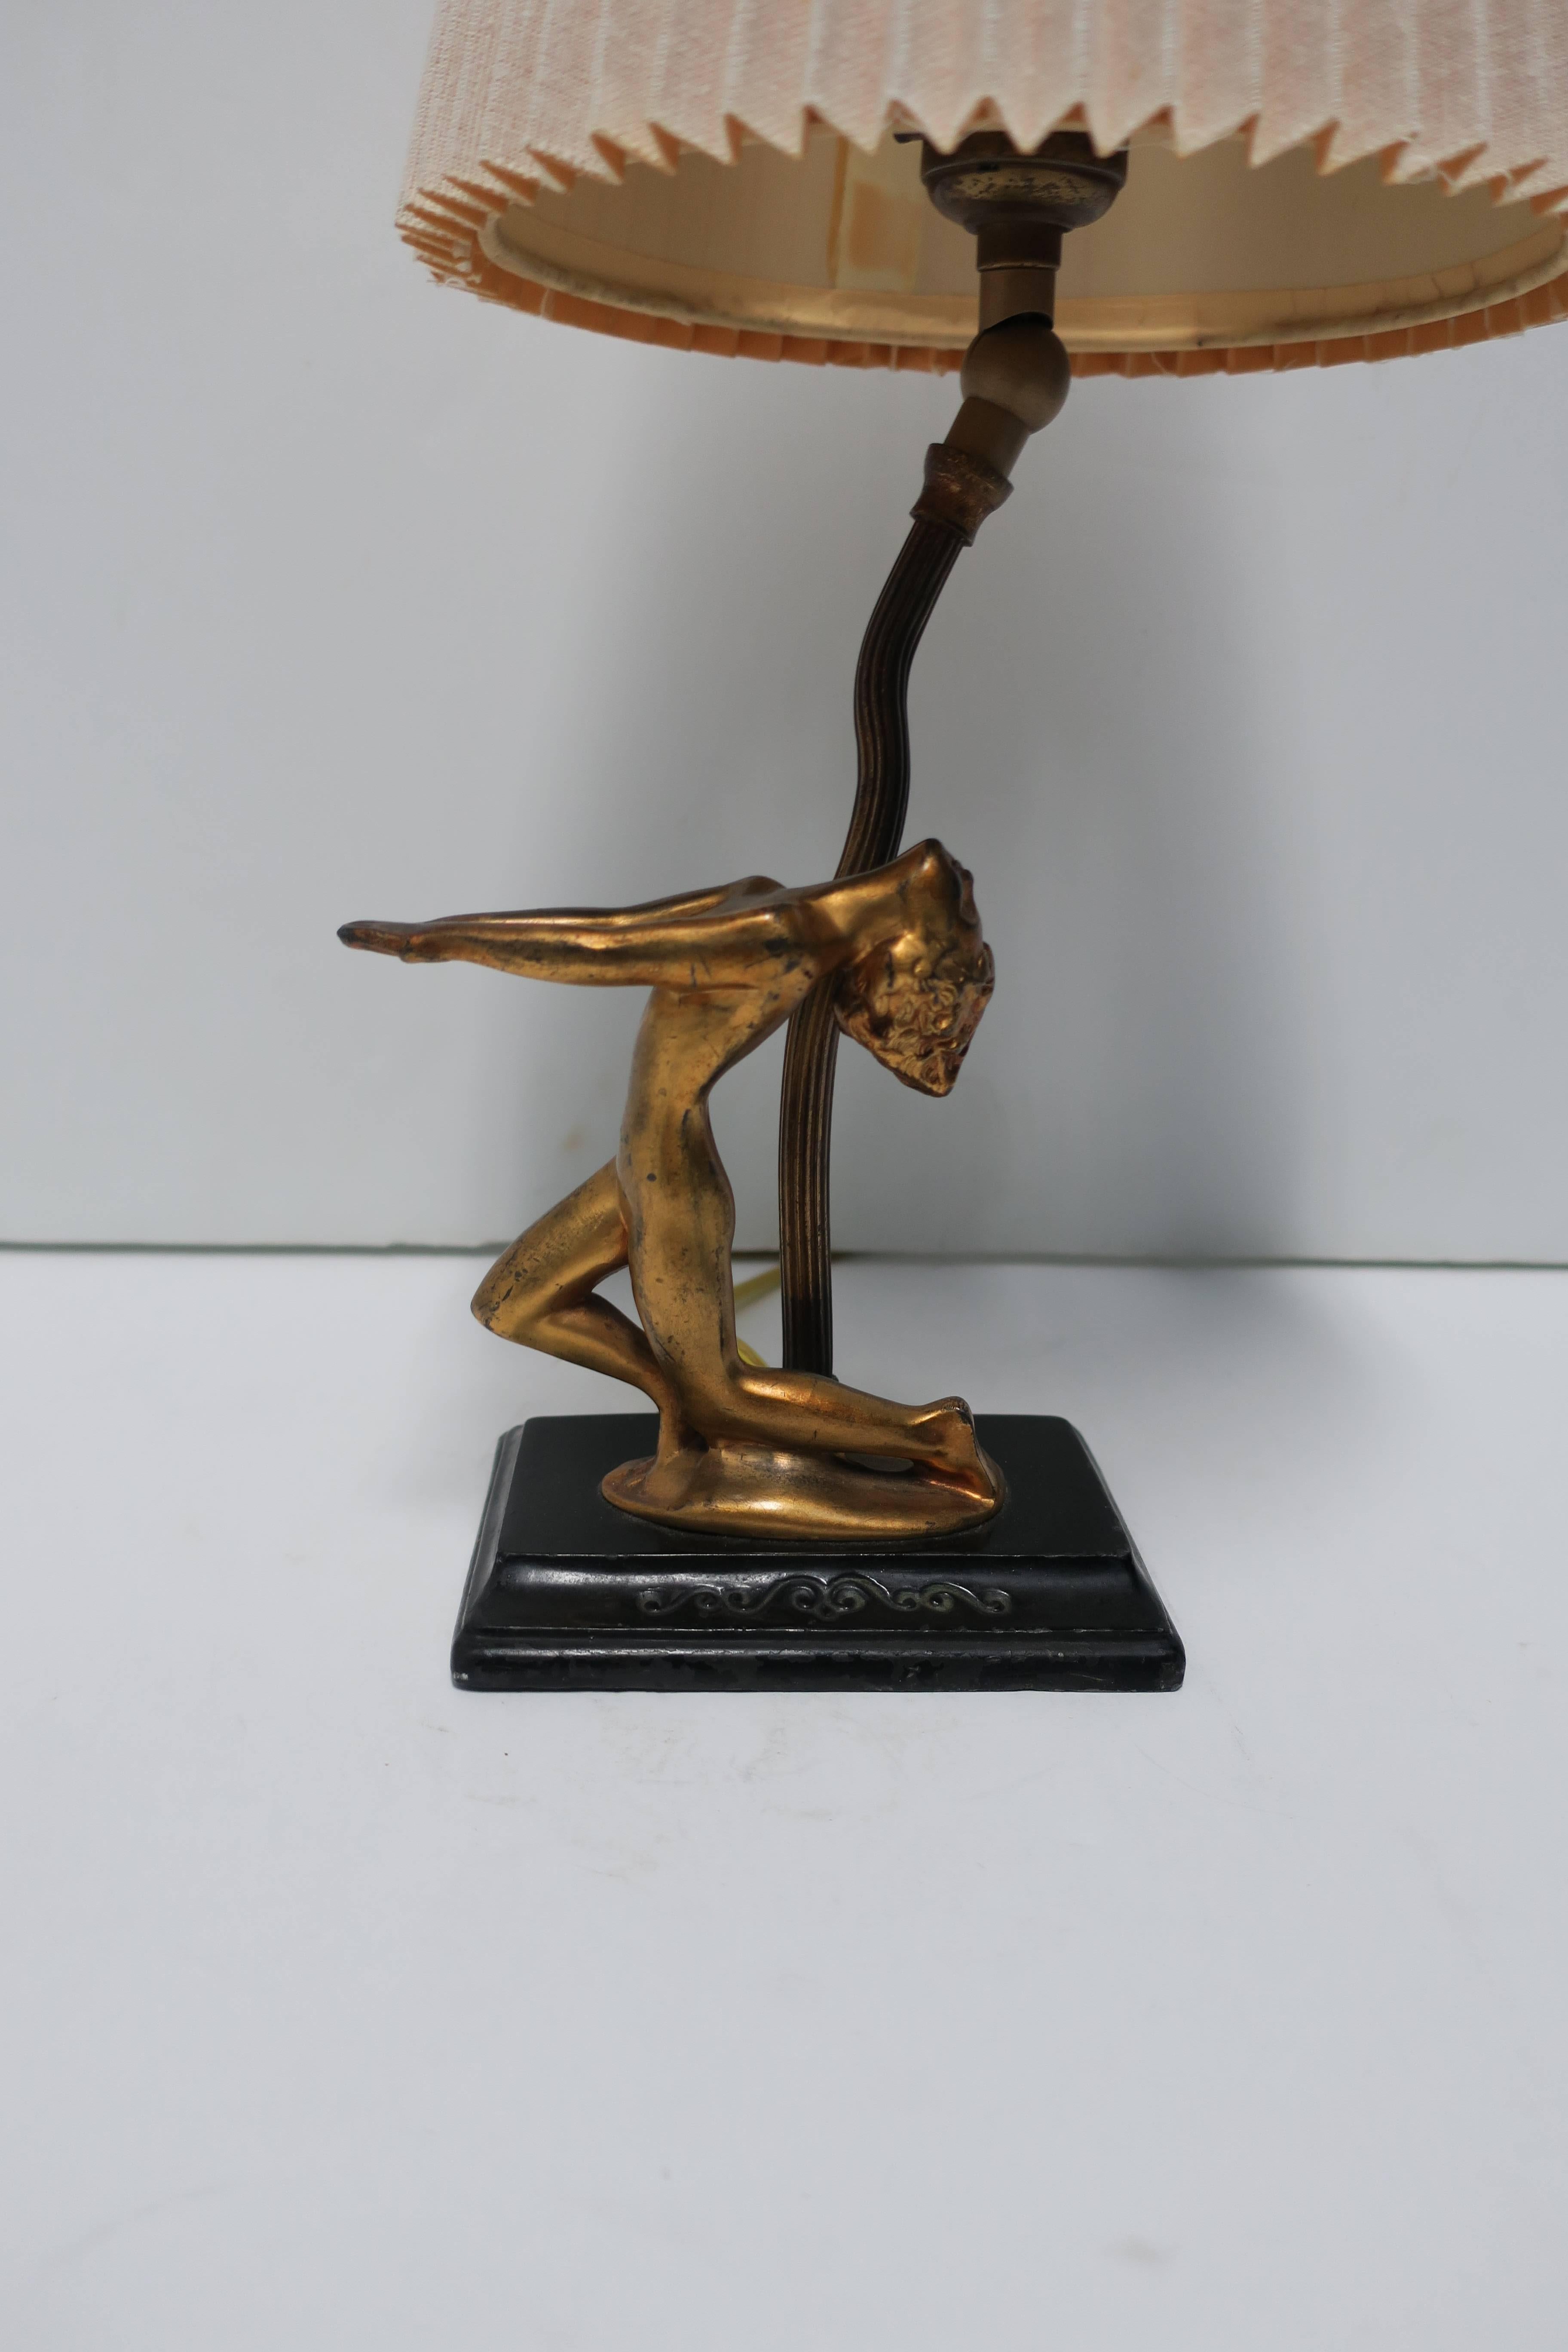 Schreibtisch- oder Tischlampe nach Frankart, schwarz-goldene weibliche Skulptur, Art déco (Mitte des 20. Jahrhunderts)